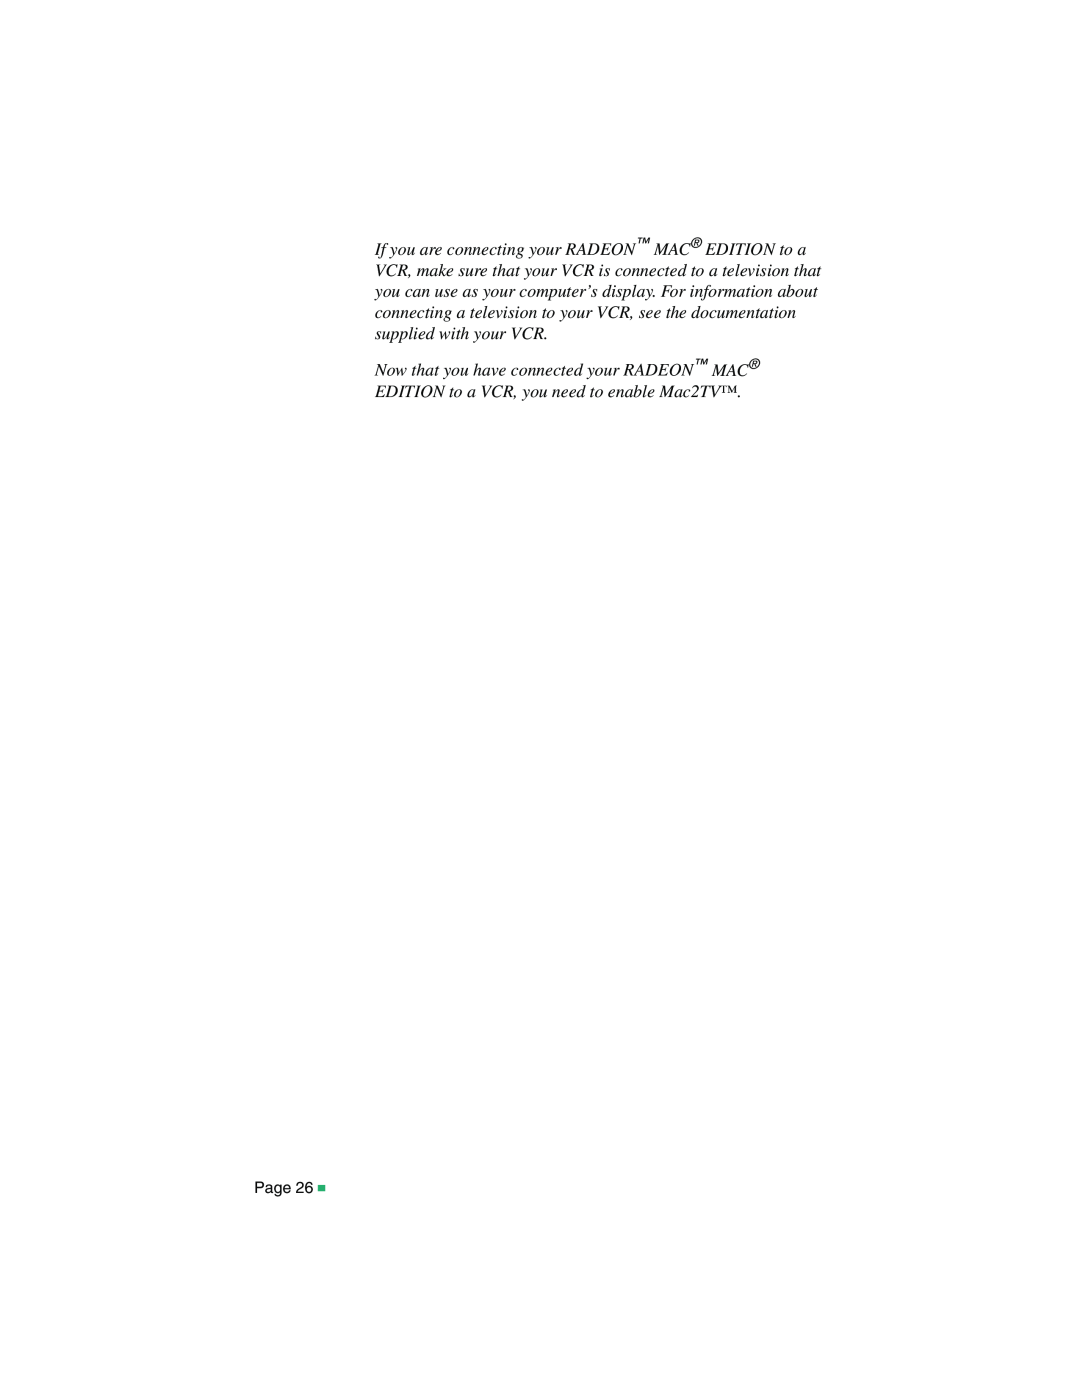 ATI Technologies 107-40214-20, RADEON MAC EDITION manual 